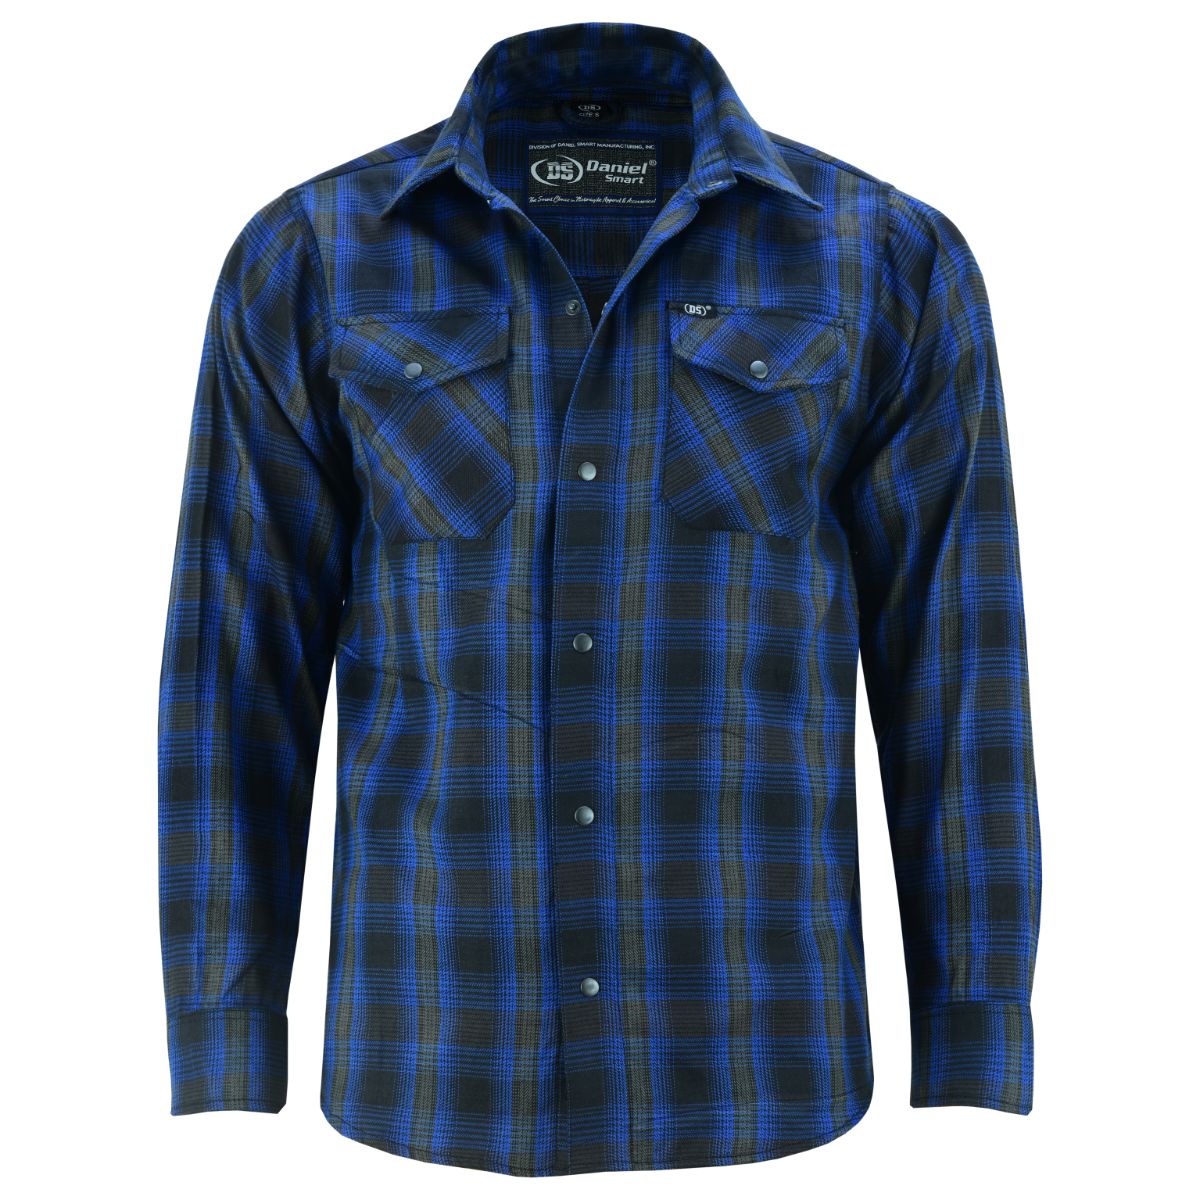 Flannel Shirt - Daze Blue and Black